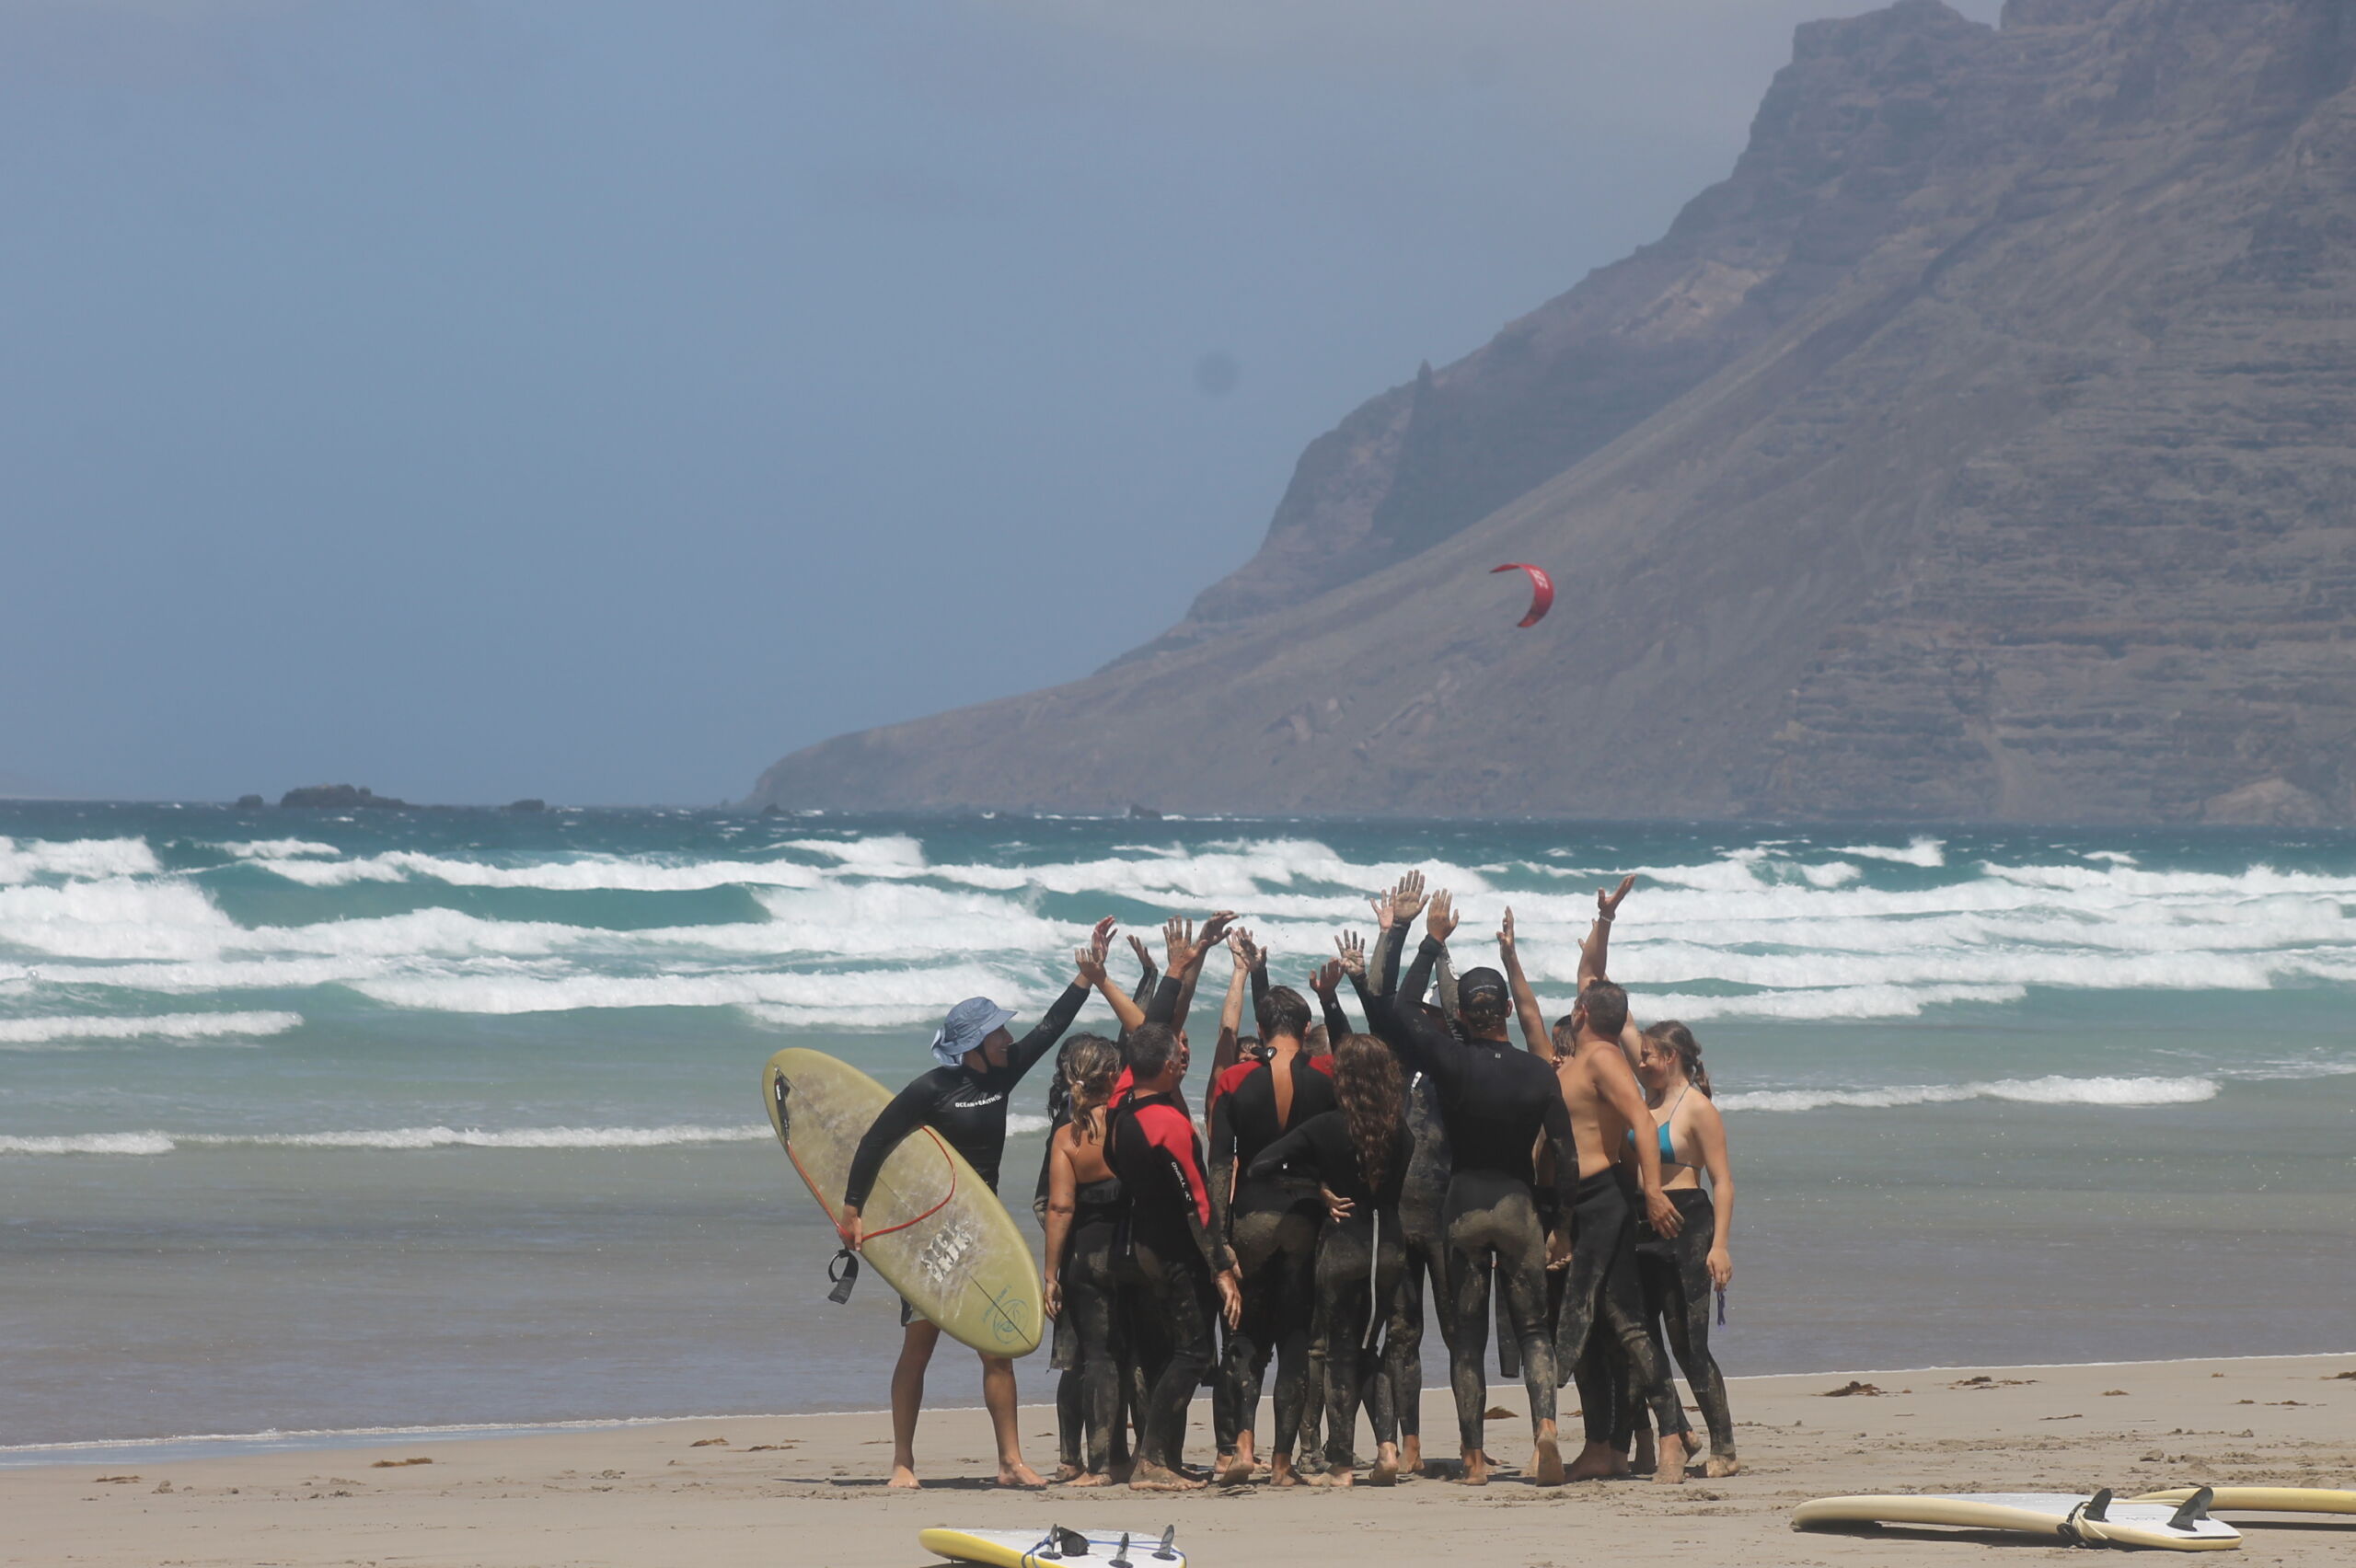 Lanzasurf Surfschule & Yoga Camps - Beste Surfschule